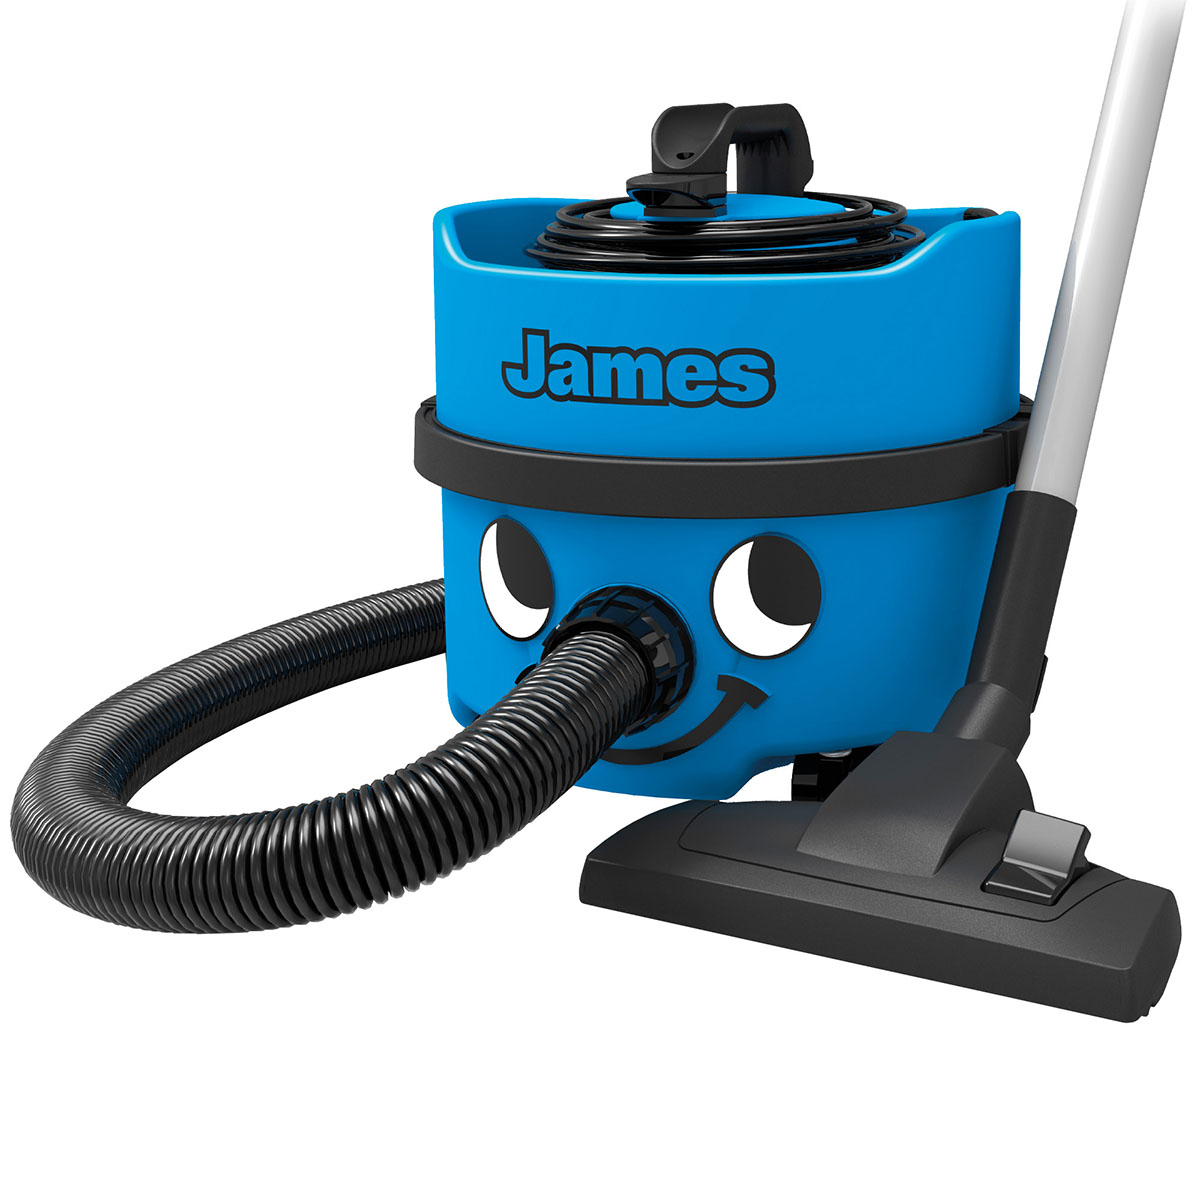 Numatic James JVP180-11 Cylinder Vacuum Cleaner - Blue